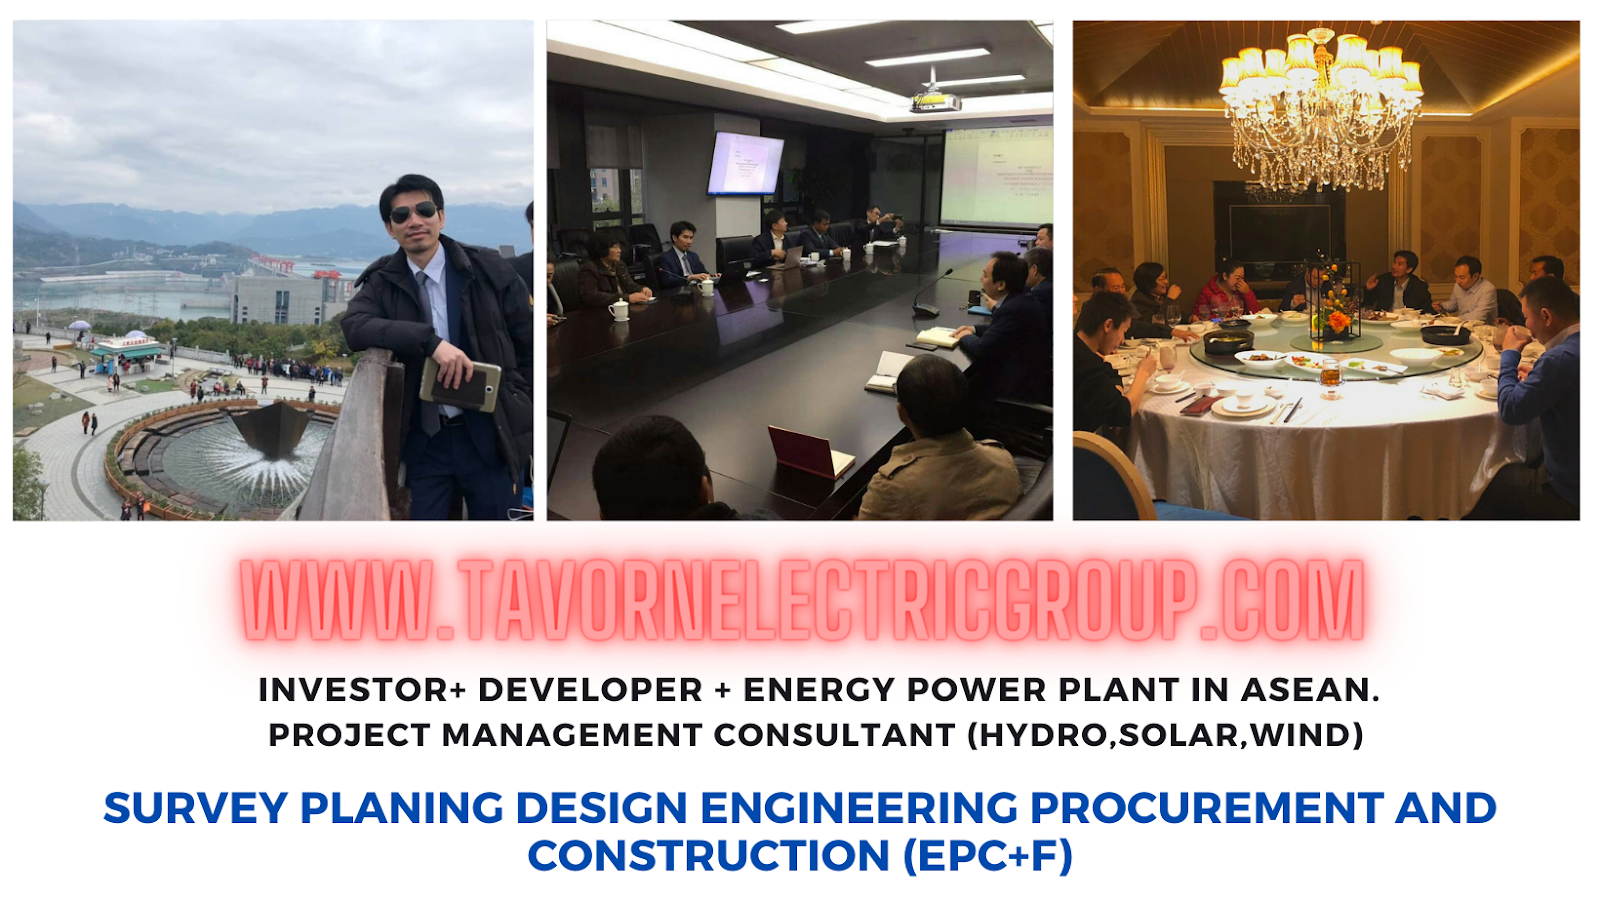 TAVORN ELECTRIC GROUP นักลงทุนโรงไฟฟ้า ที่ปรึกษานักพัฒนาโครงการโรงไฟฟ้าในอาเซียน ไทย ลาว กัมพูชา